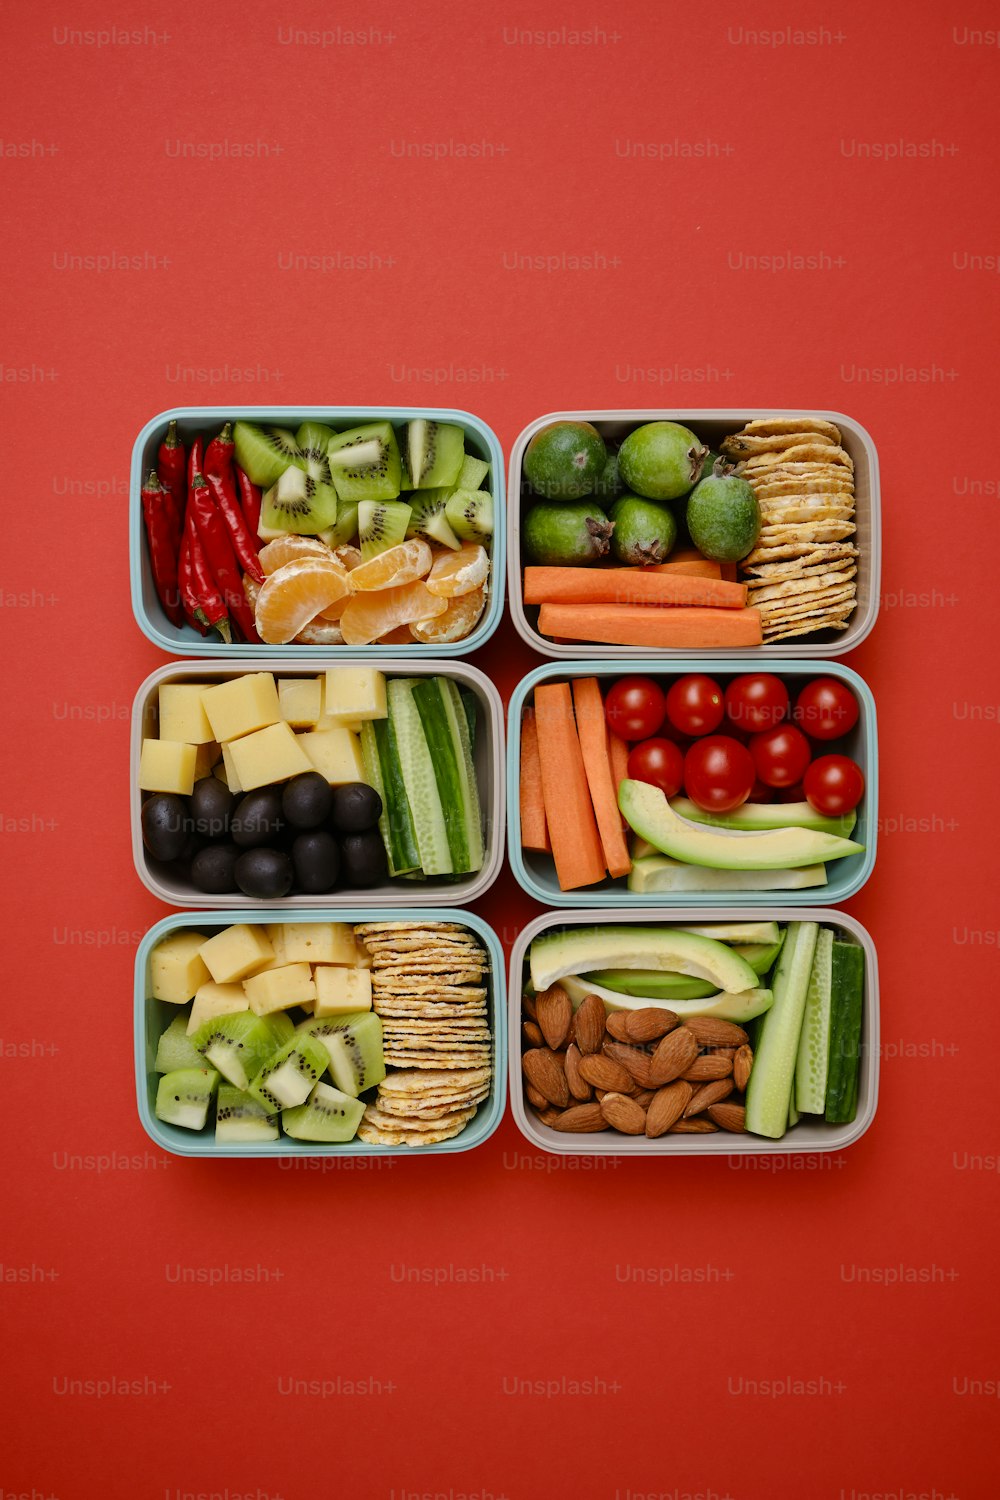 Un grupo de cuatro recipientes llenos de diferentes tipos de alimentos